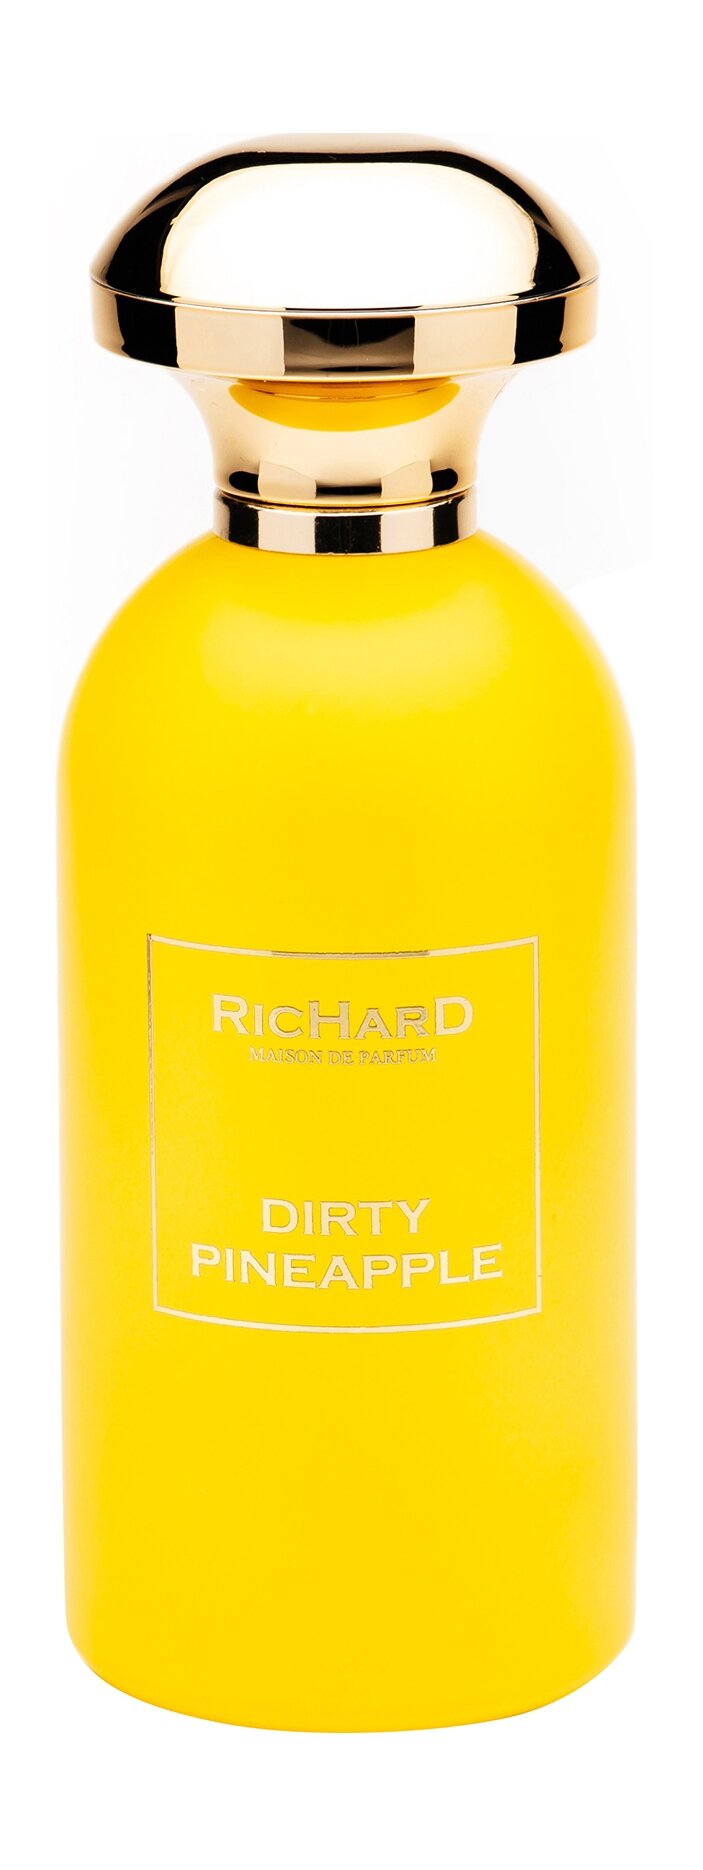 RICHARD MAISON DE PARFUM Dirty Pineapple Парфюмерная вода унисекс, 100 мл